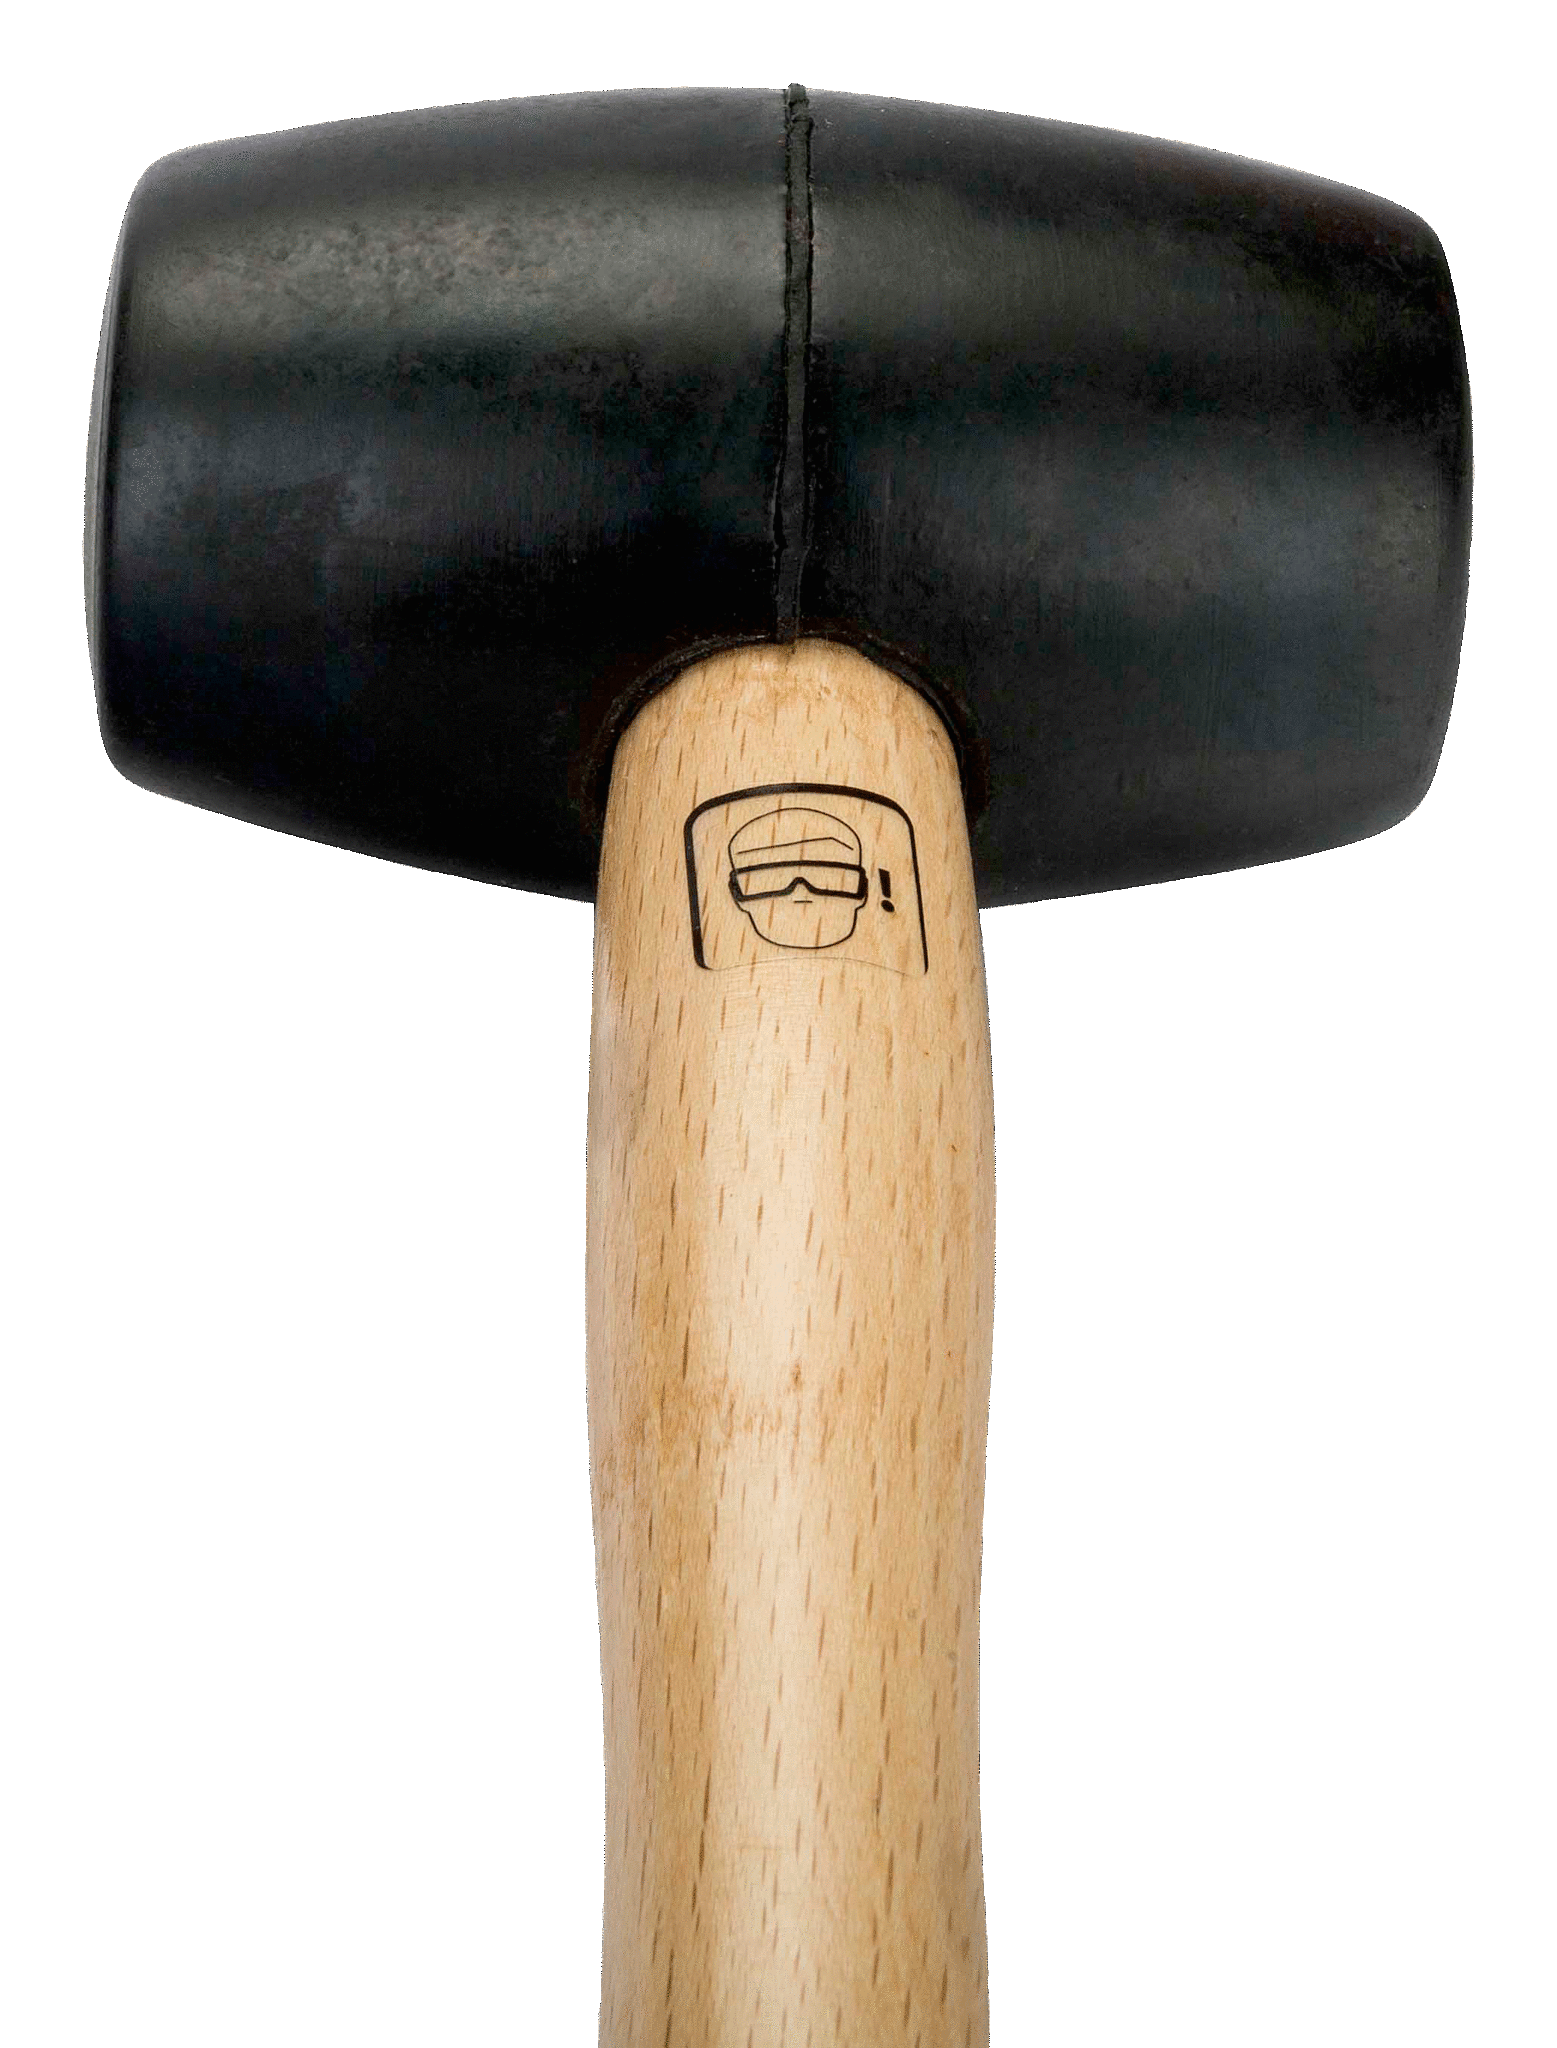 картинка Резиновая киянка, деревянная рукоятка BAHCO 3625RM-55 от магазина "Элит-инструмент"